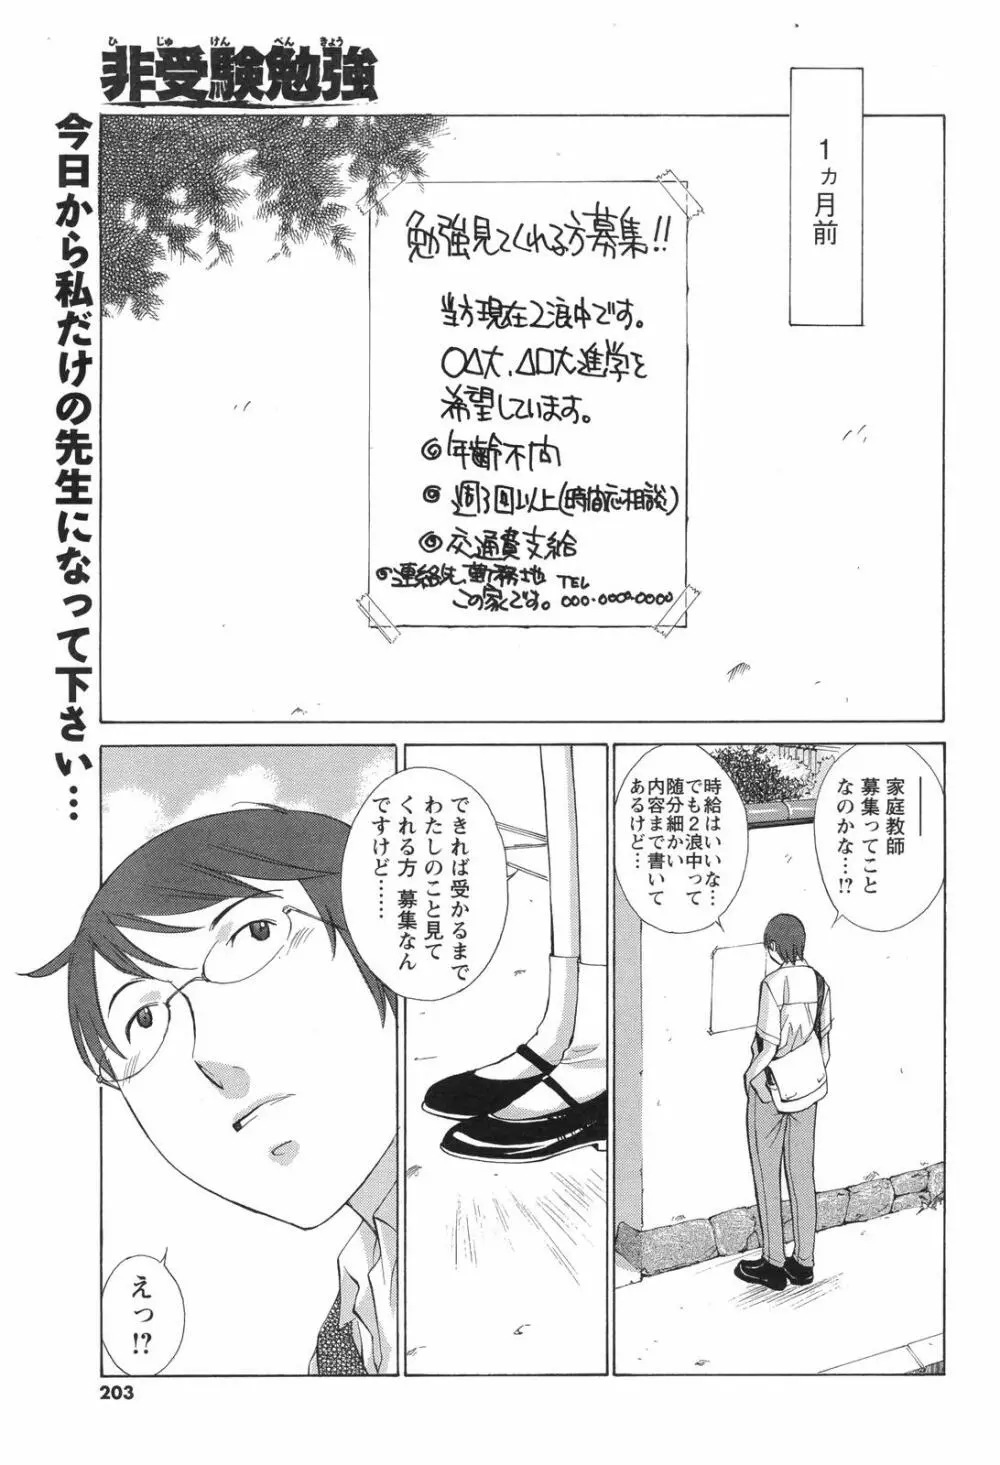 メンズヤングスペシャルIKAZUCHI雷 Vol.4 2007年12月号増刊 203ページ